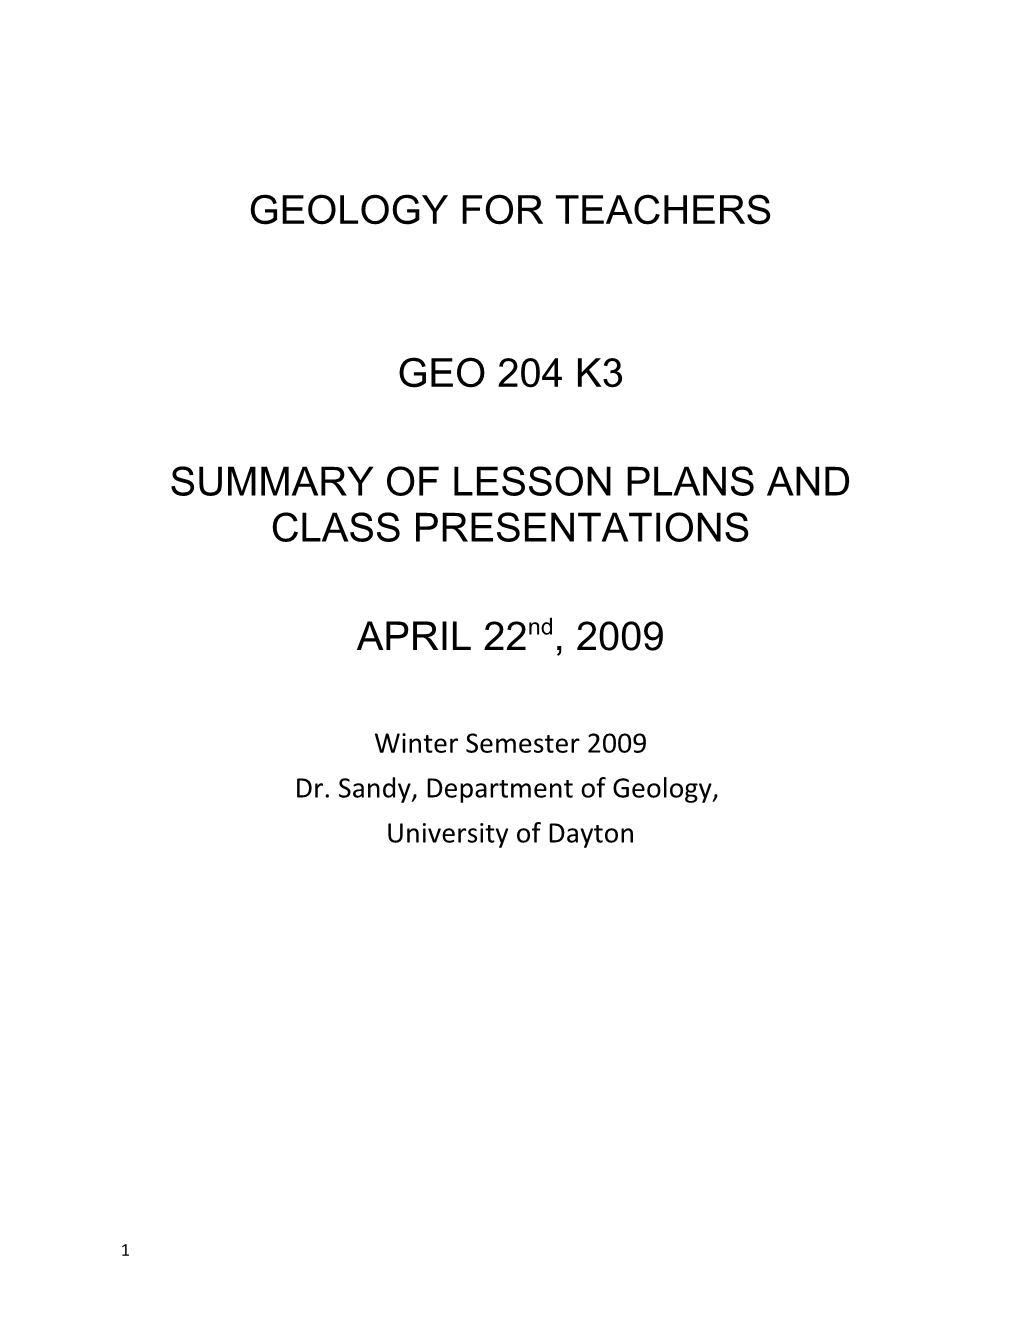 Geology for Teachers